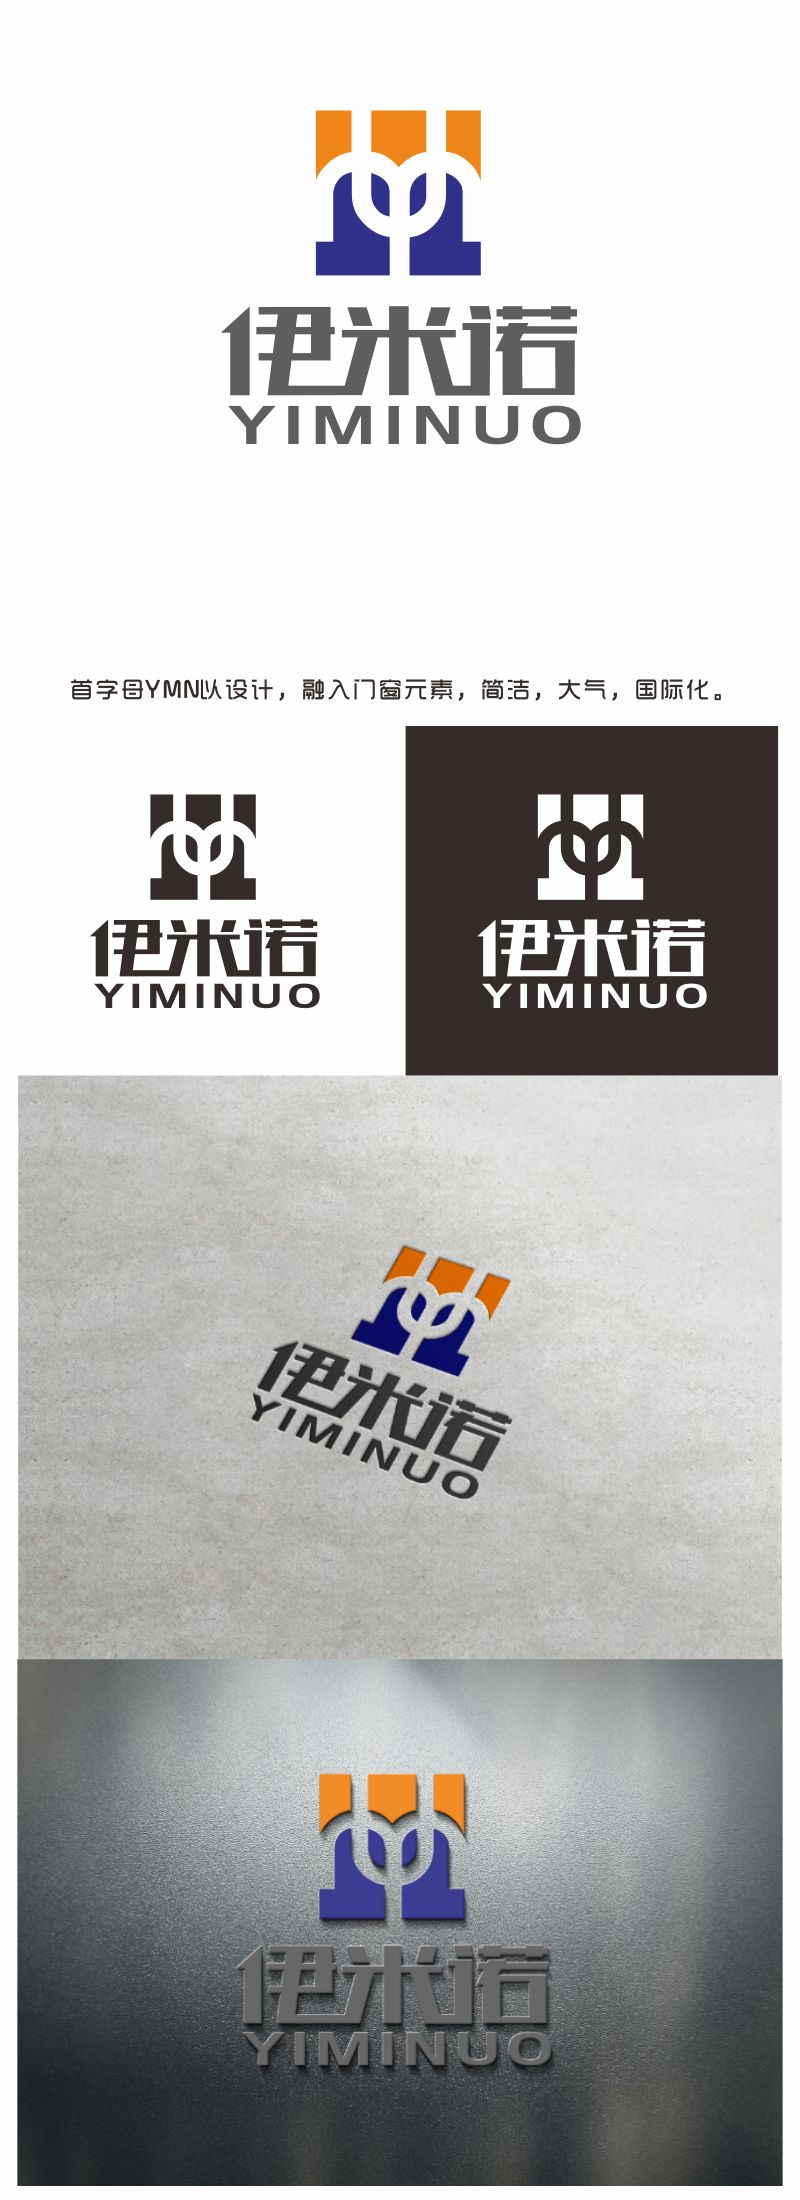 汤儒娟的伊米诺铝合金门窗logo设计